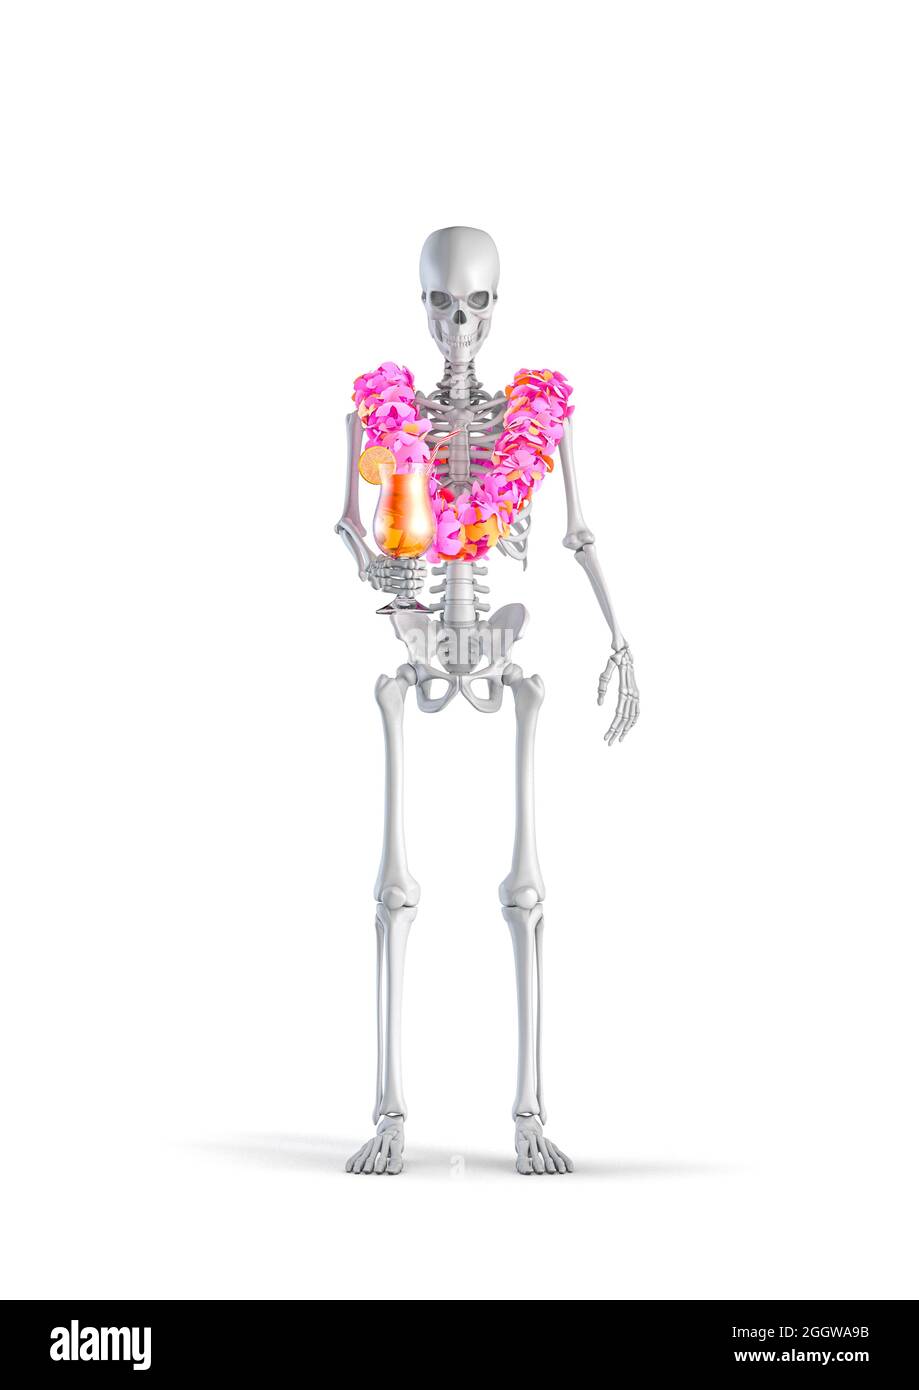 Esqueleto tropical de vacaciones - 3D ilustración de esqueleto humano masculino figura en vacaciones con cóctel de frutas y lei de flores hawaianas aisladas en la calle blanca Foto de stock